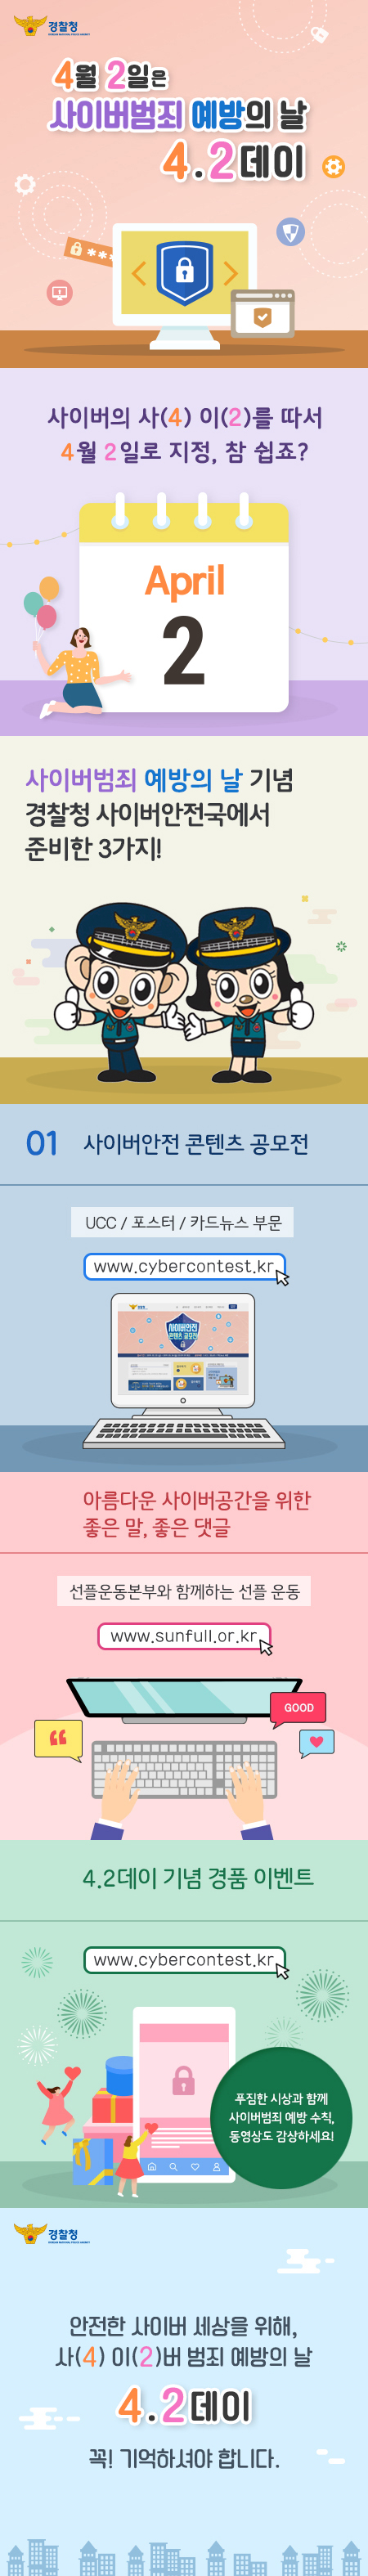 ‘사이버범죄 예방의 날’ 안내 카드뉴스